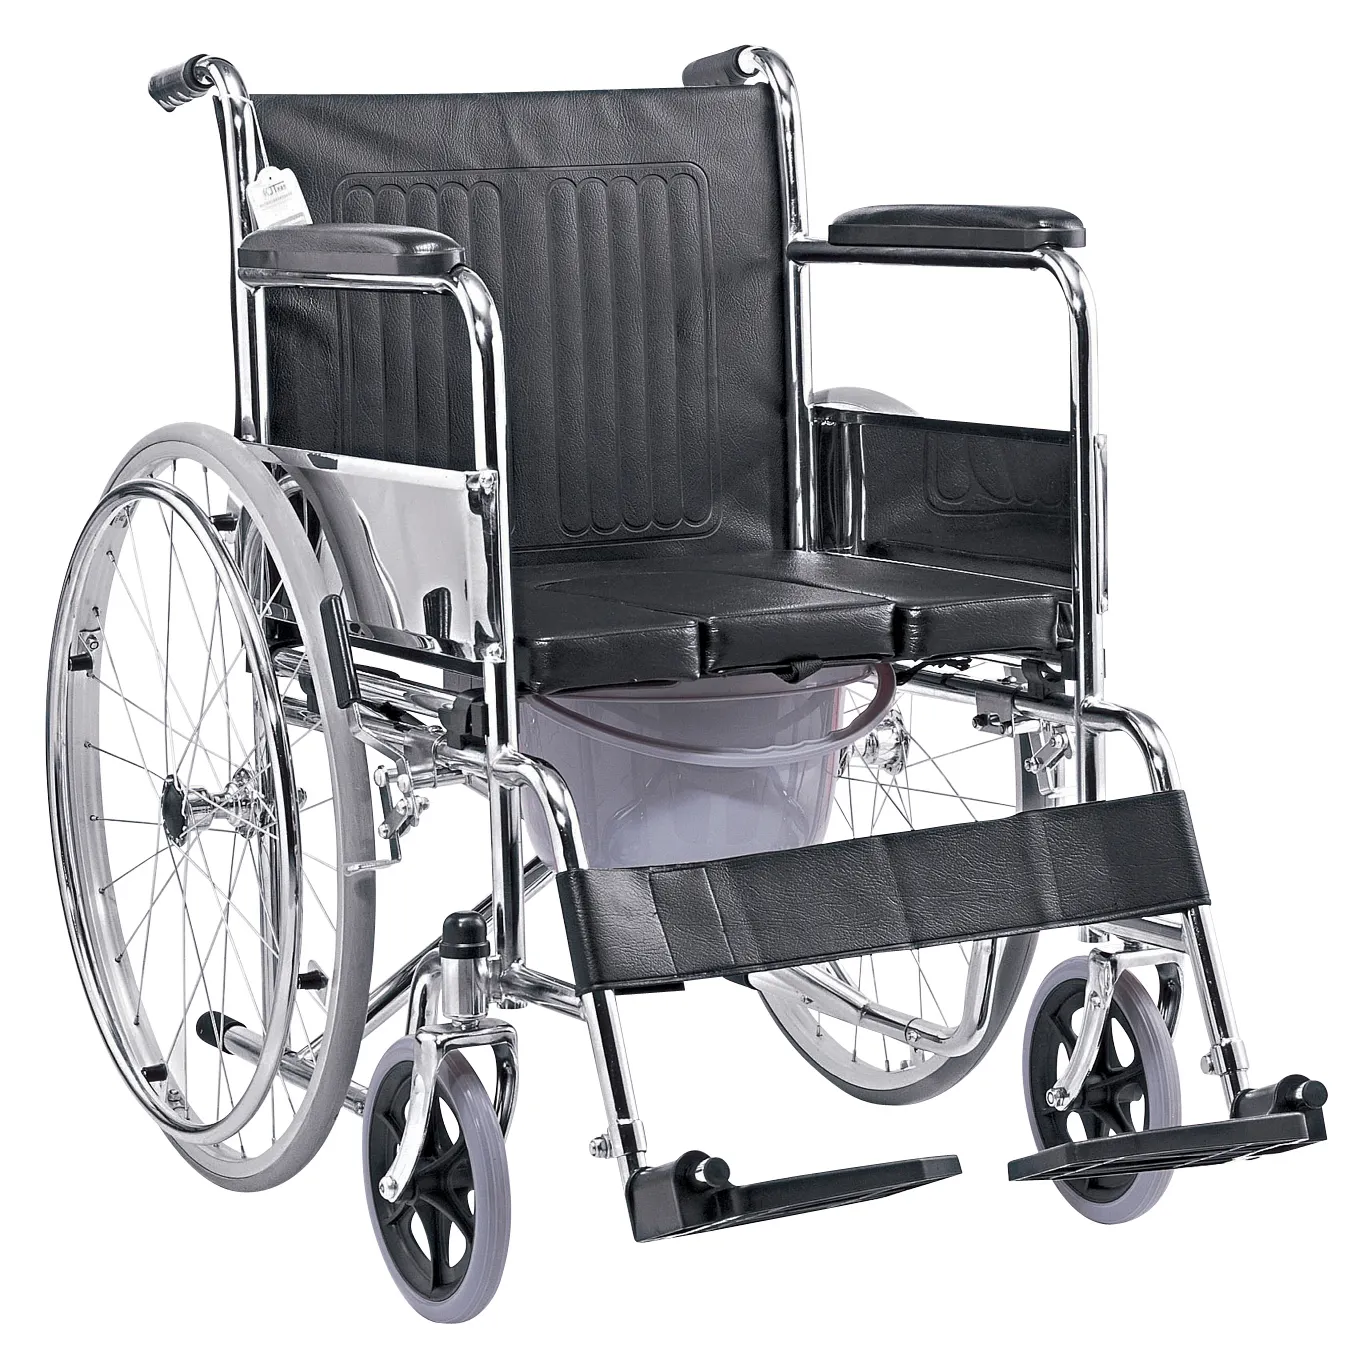 مستشفى استخدام رخيصة الثمن على كرسي متحرك/الألومنيوم للطي ووكر/عصا للمشي عكاز/الكوع